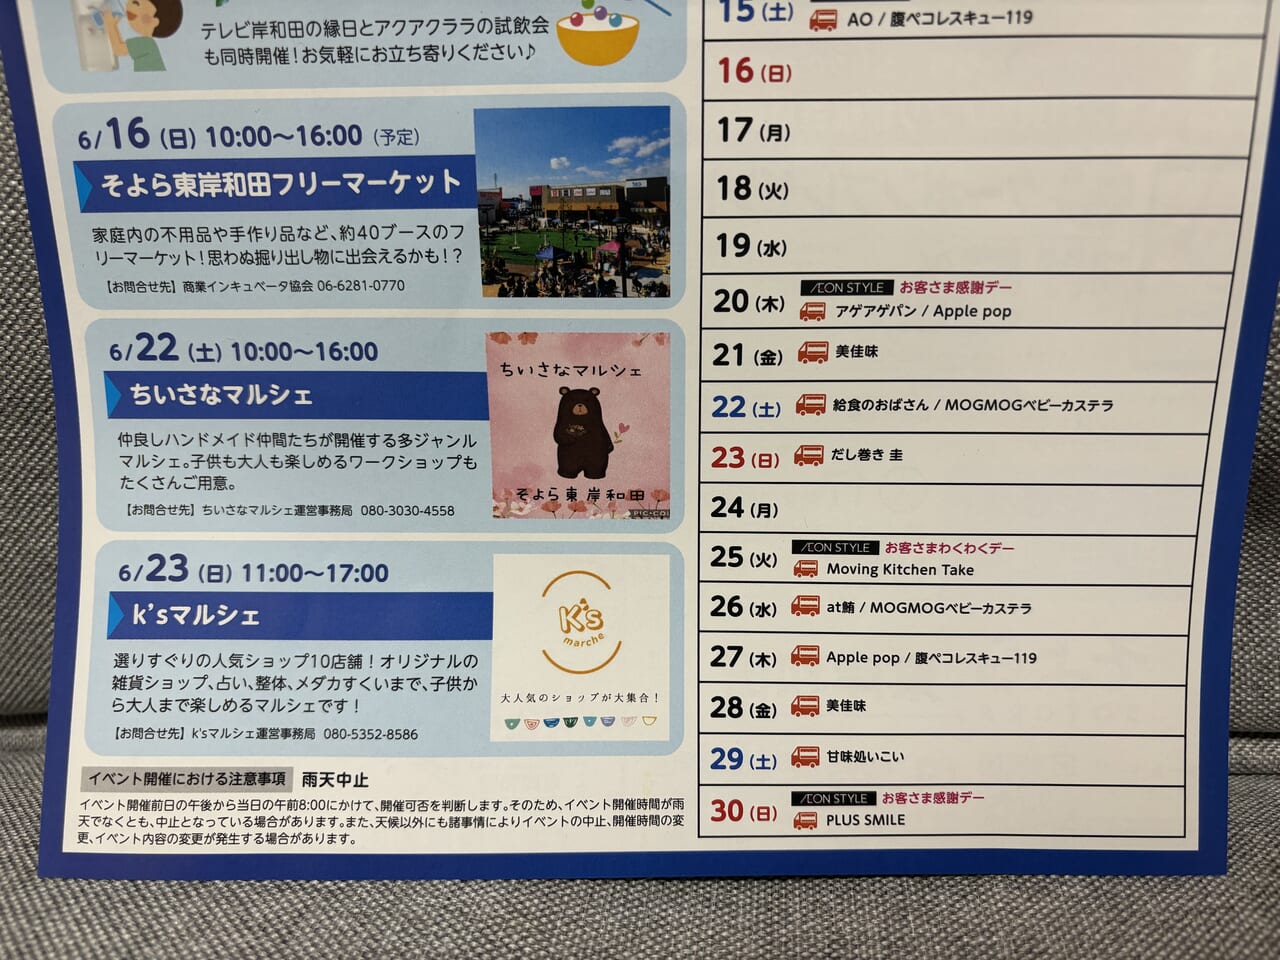 そよら東岸和田イベントカレンダー202406後半